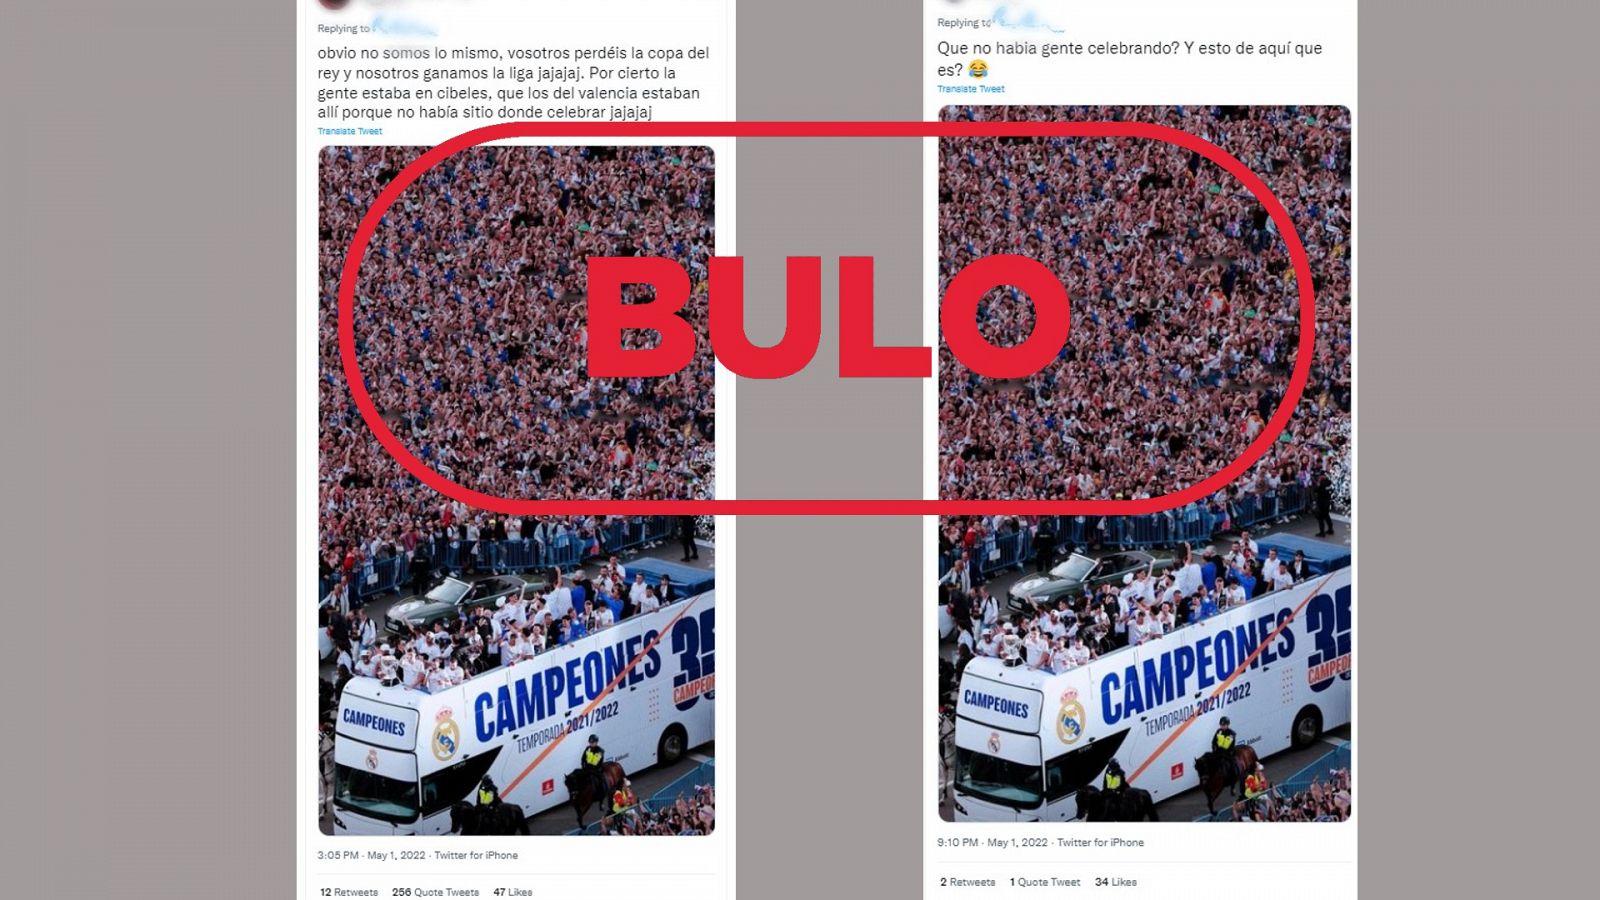 Dos mensajes de redes que difunden la imagen manipulada de la celebración del Real Madrid, con el sello bulo en rojo de VerificaRTVe